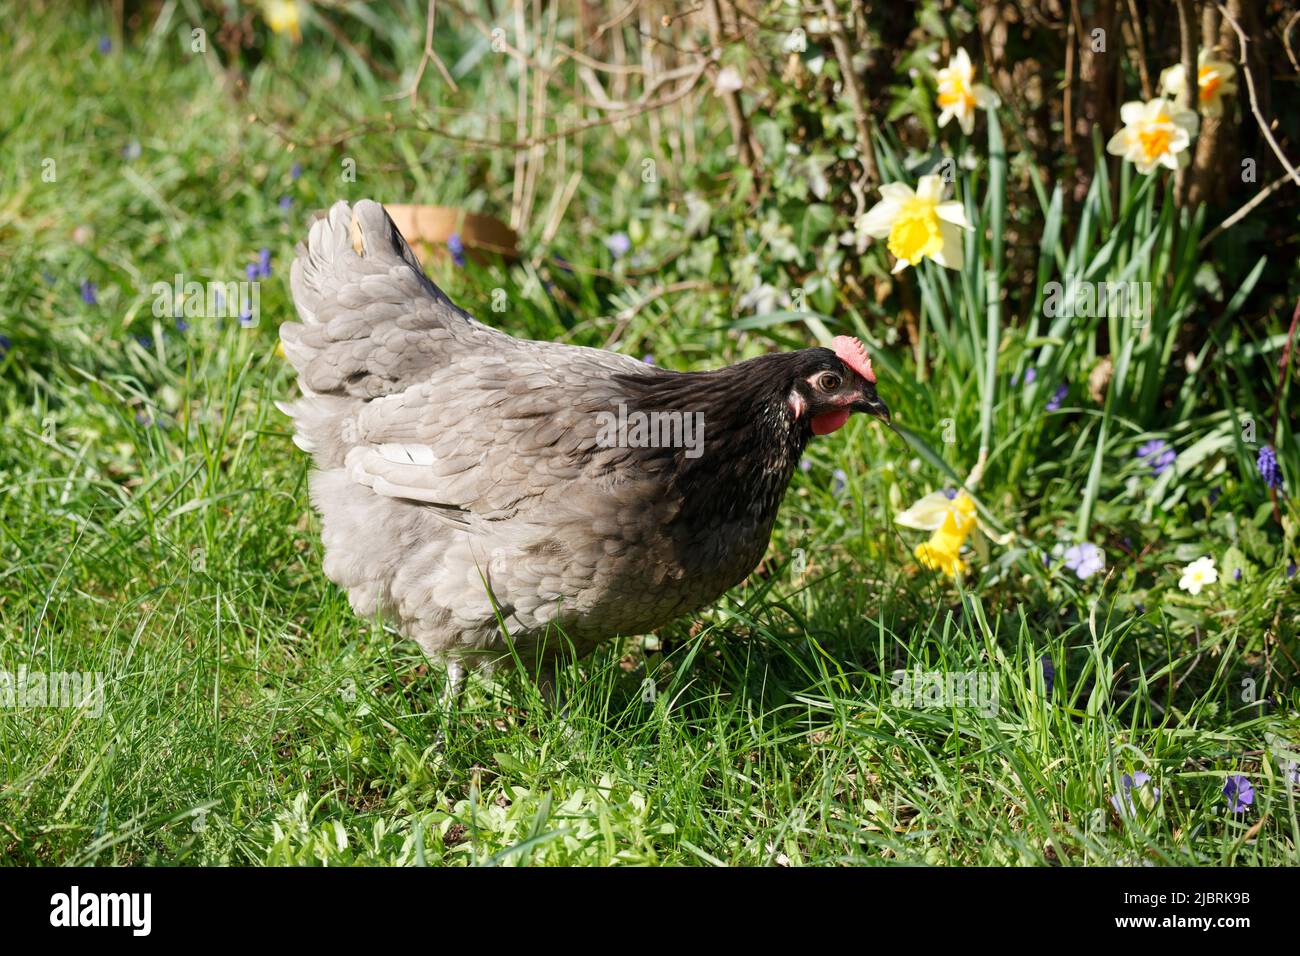 Hen in a garden Stock Photo